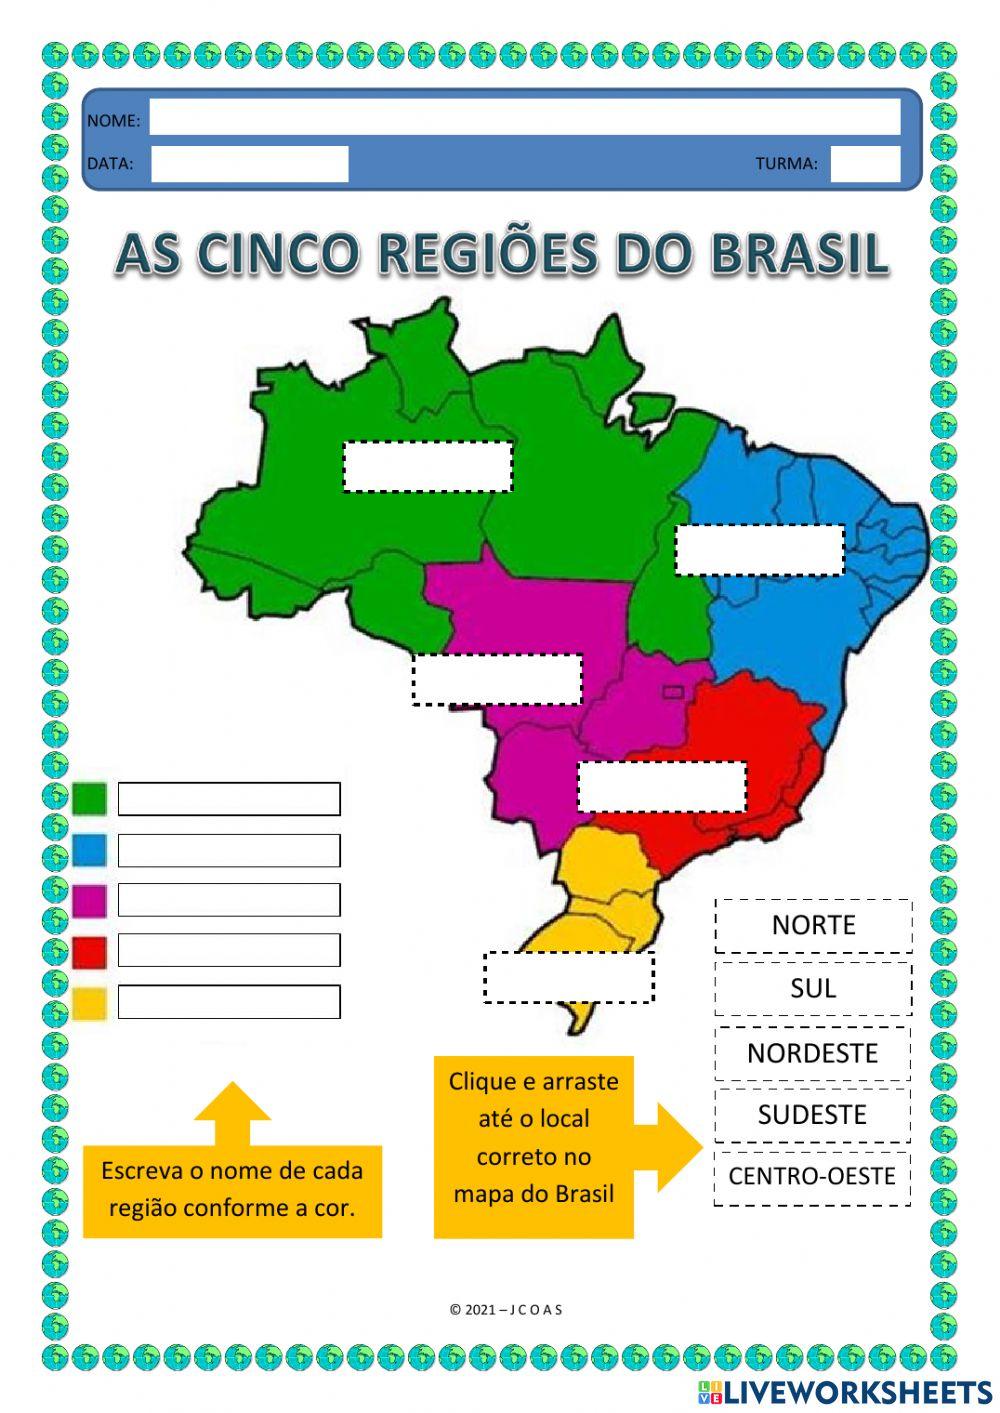 As cinco regiões do brasil